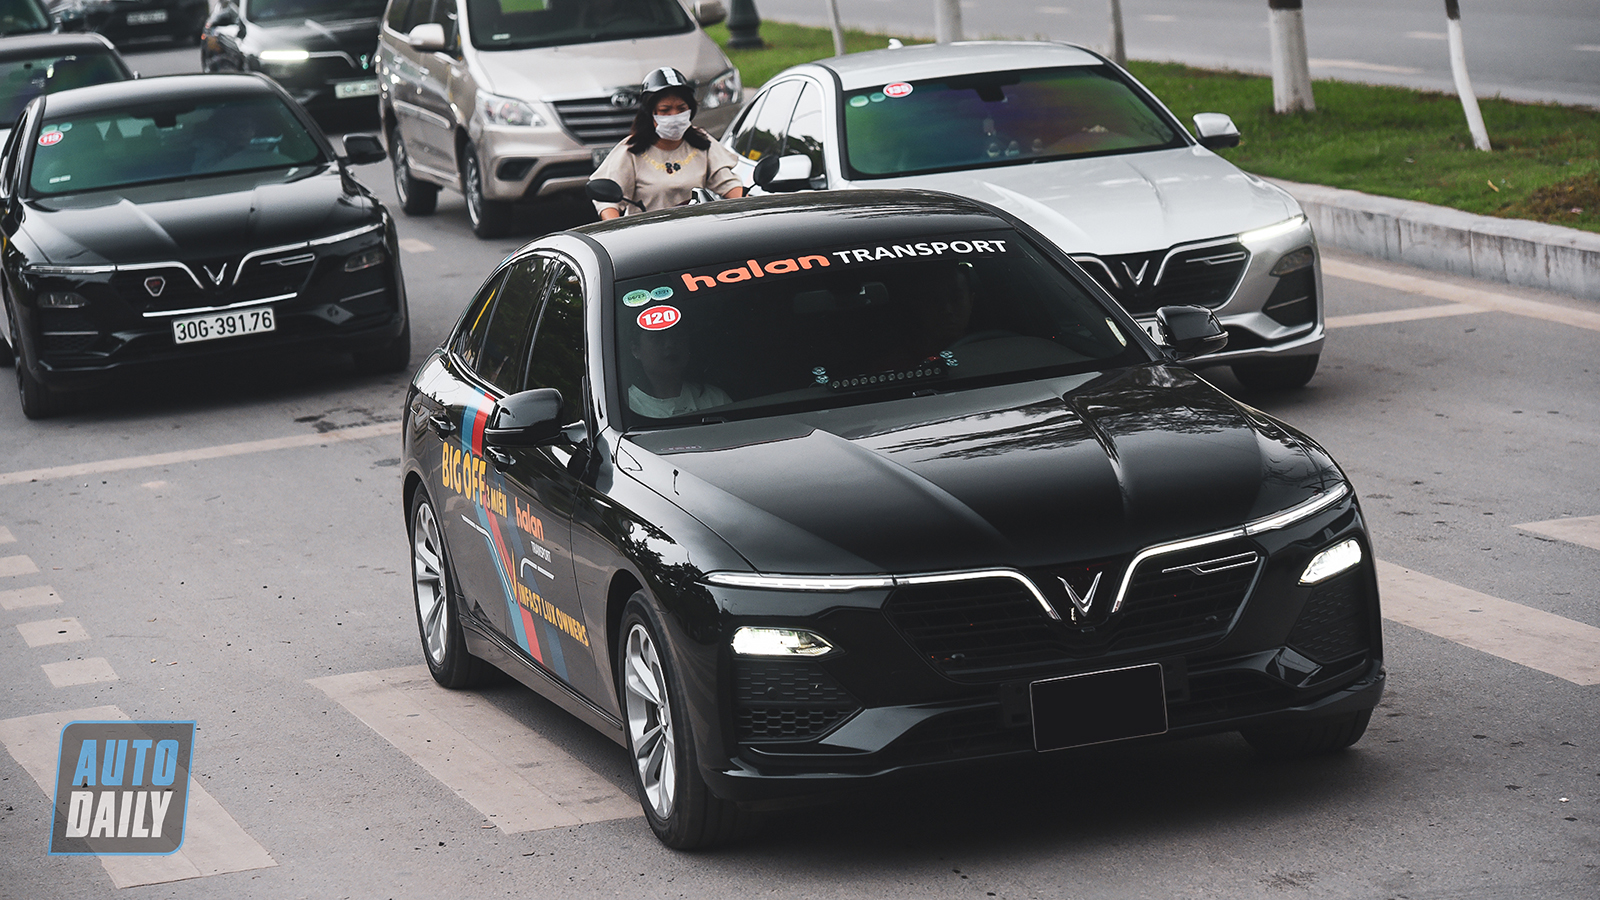 Sedan tầm giá 1 tỷ, VinFast Lux A tiếp tục dẫn đầu trong tháng 3